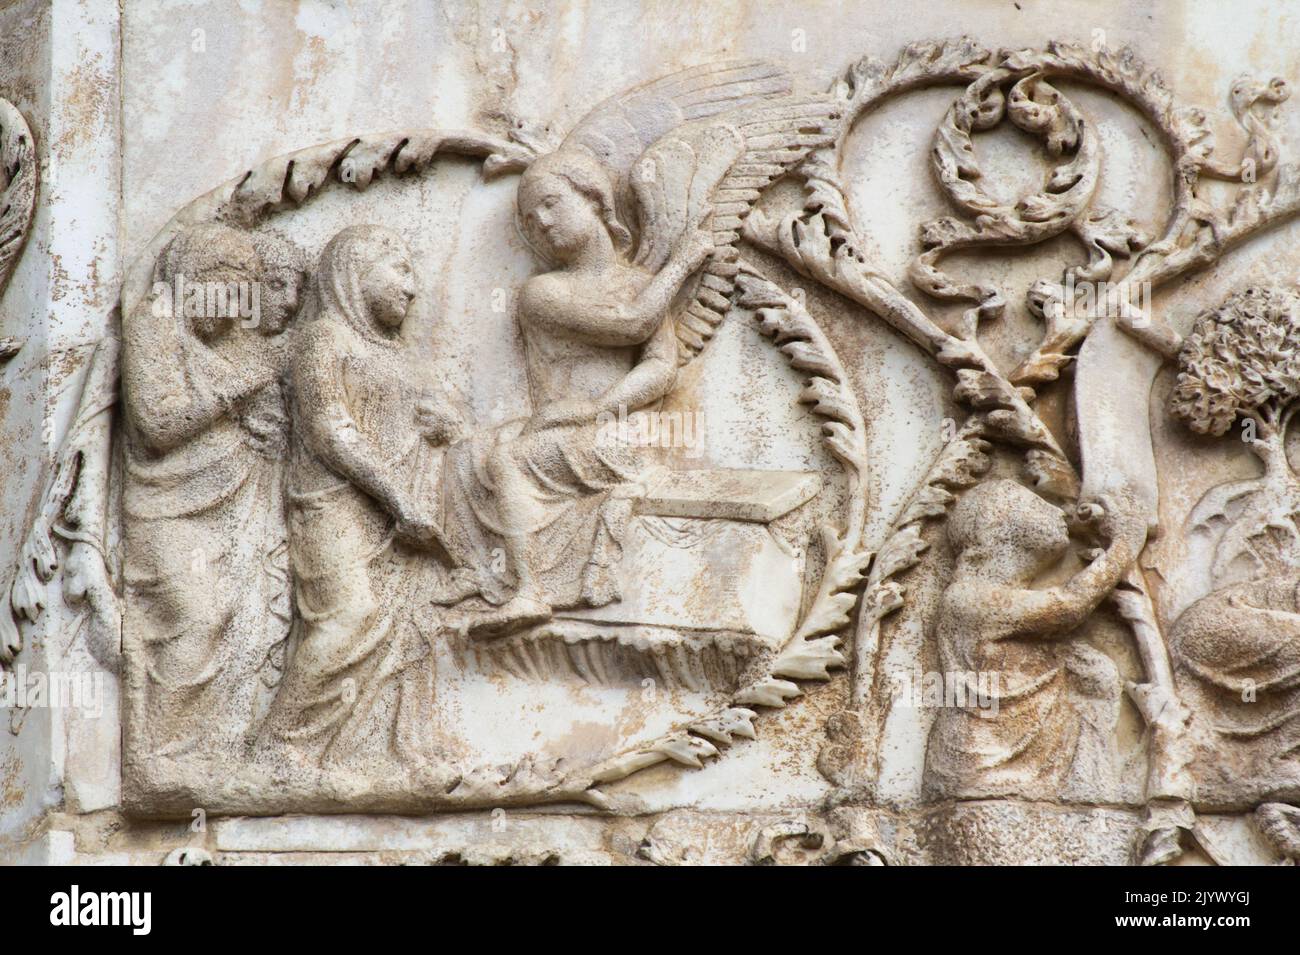 Risurrezione (tomba vuota) - bassorilievo dal 3th° pilastro (nuovo Testamento) - facciata della cattedrale di Orvieto - Umbria - Italia Foto Stock